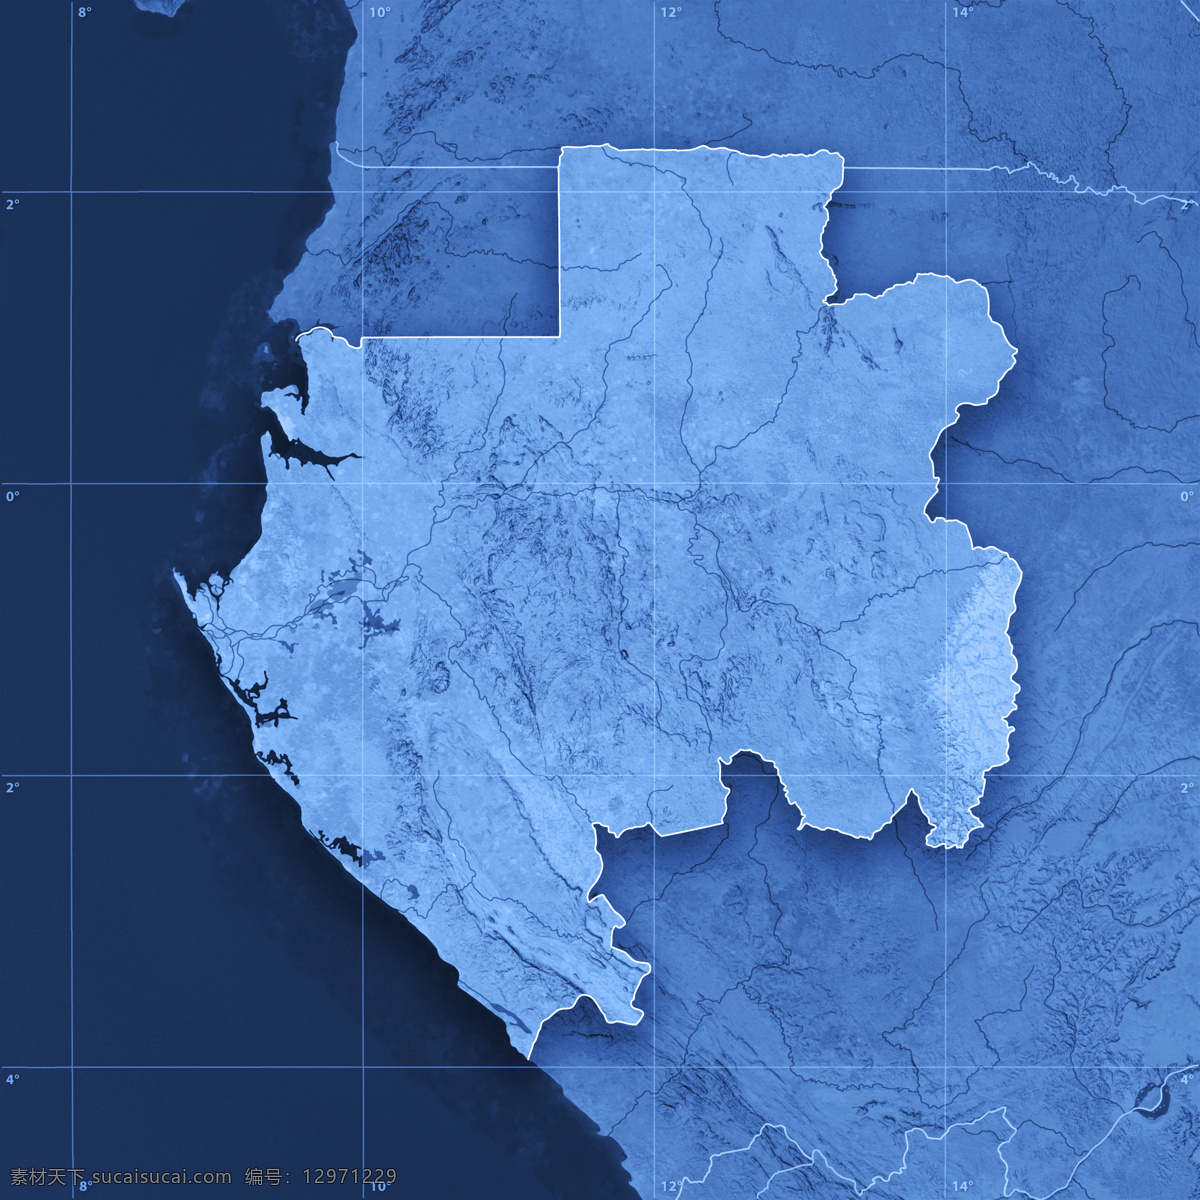 地图 蓝色地图 地图模板 经线 纬线 经度 纬度 办公学习 其他类别 生活百科